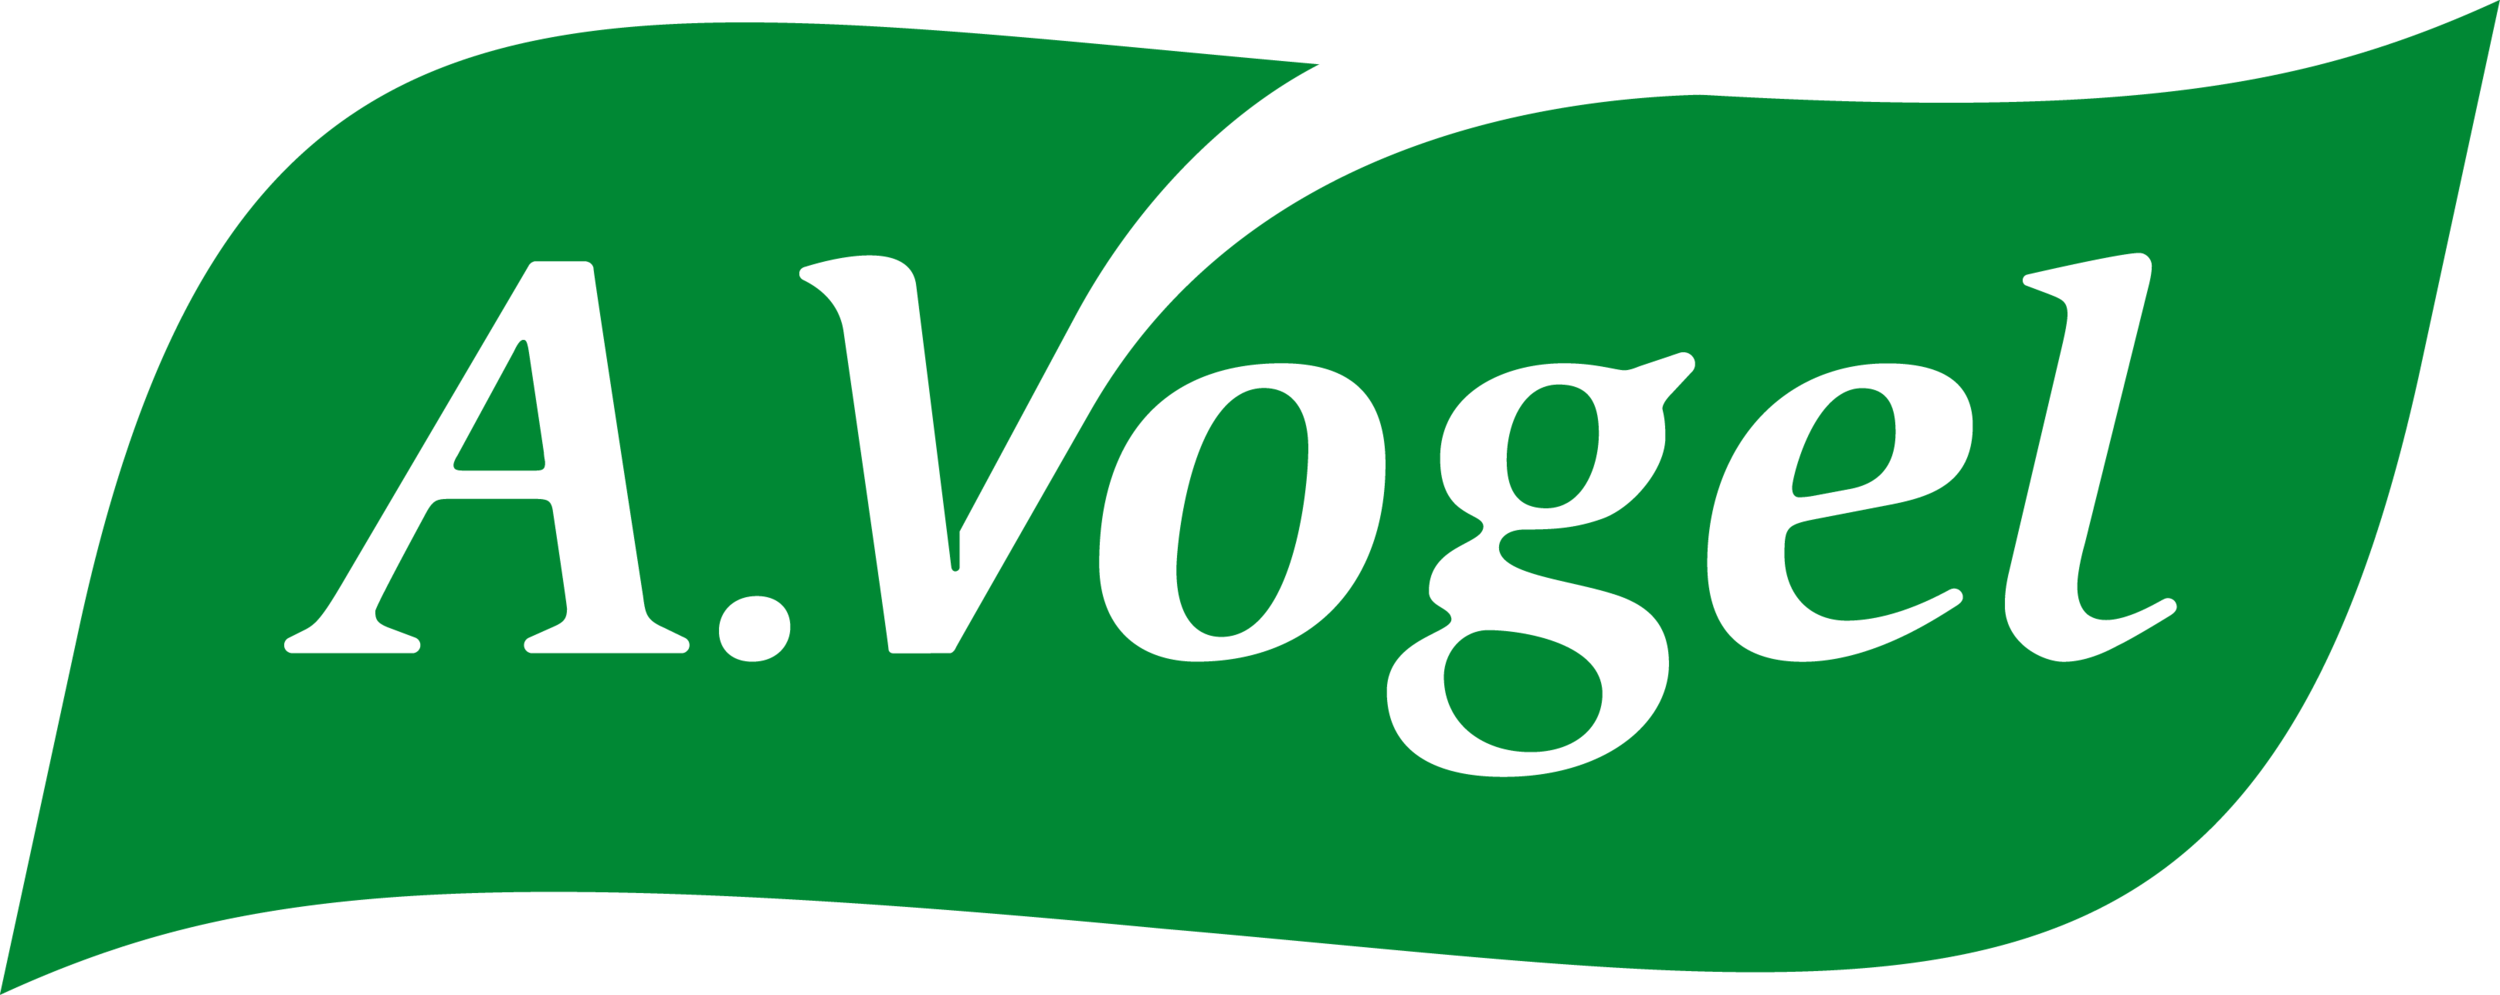 avogel_logo.png